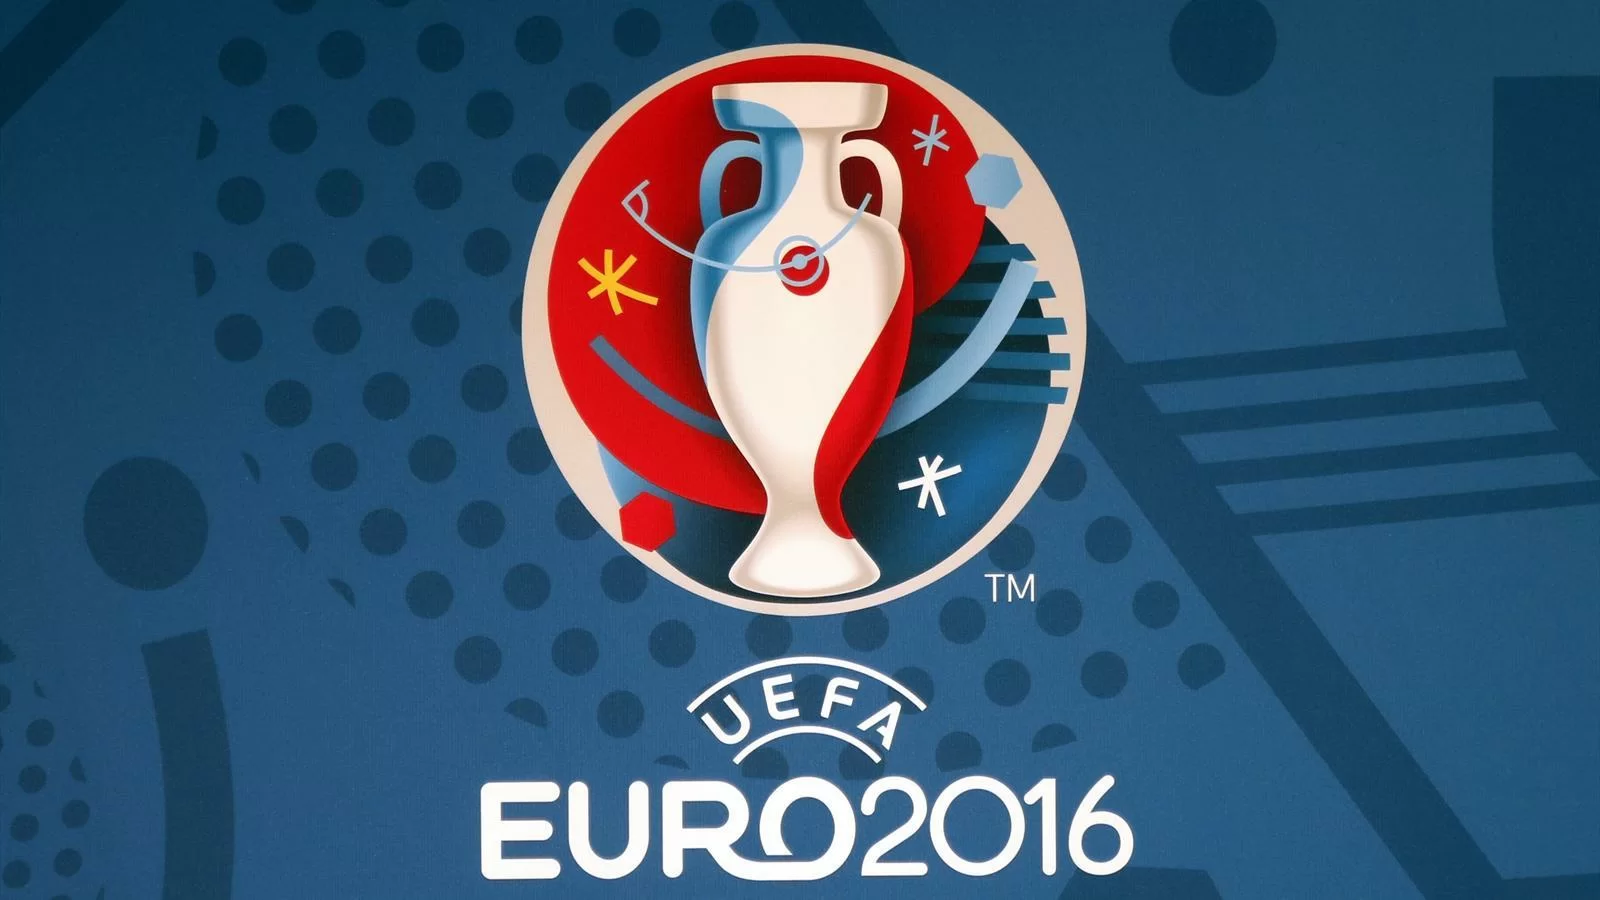 Pioggia di soldi per i club grazie ad Euro2016